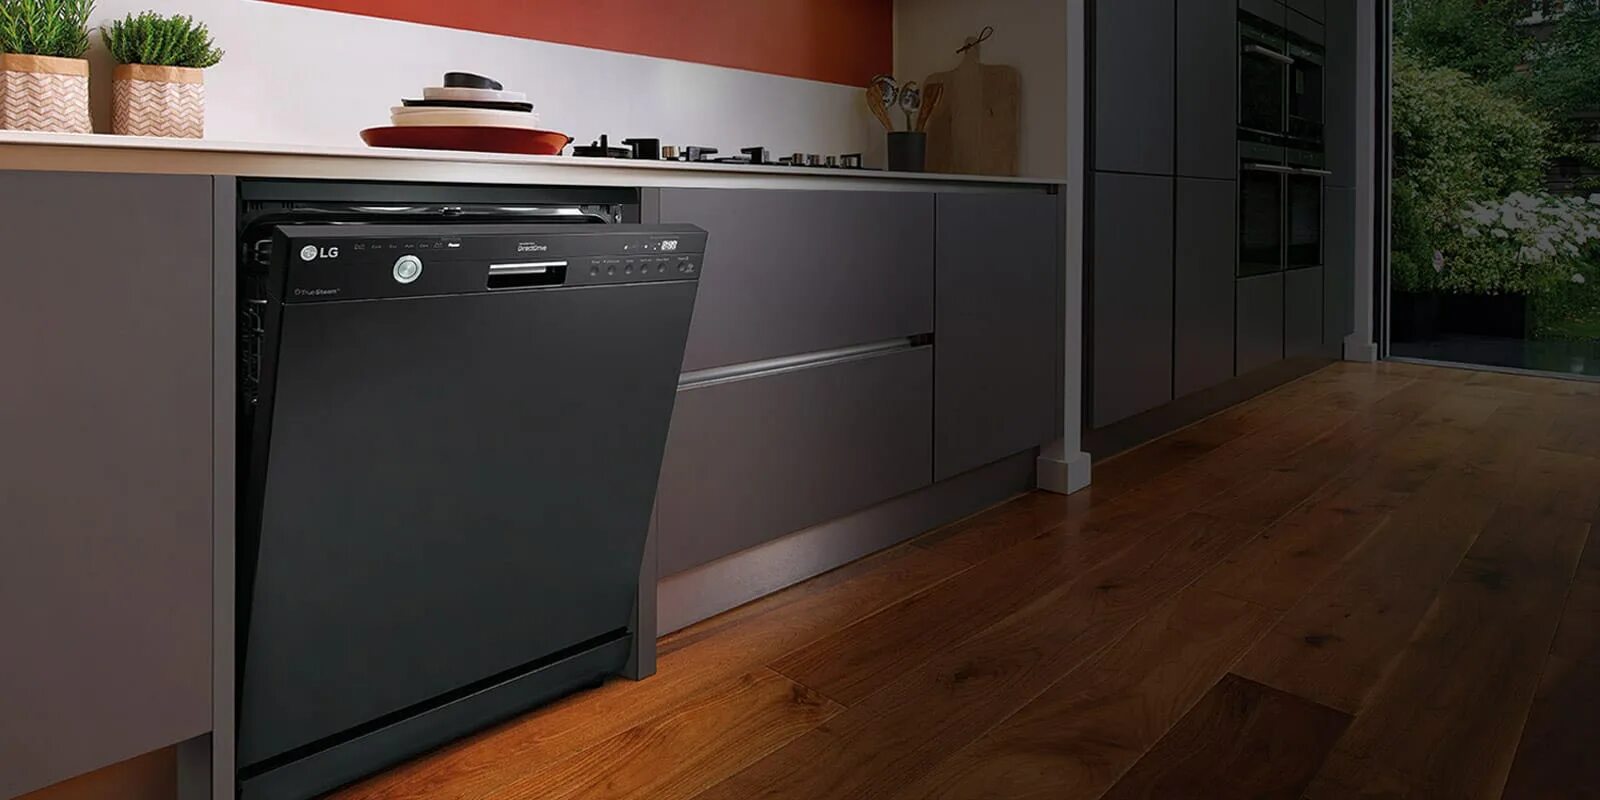 Посудомоечная машина 45 см отдельностоящая. Встроенная посудомоечная машина 45 см Bosch. Посудомоечная машина LG 45 см отдельностоящая. Посудомоечная машина 45 см отдельностоящая под столешницу. Встраиваемая посудомоечная машина 60 рейтинг качество